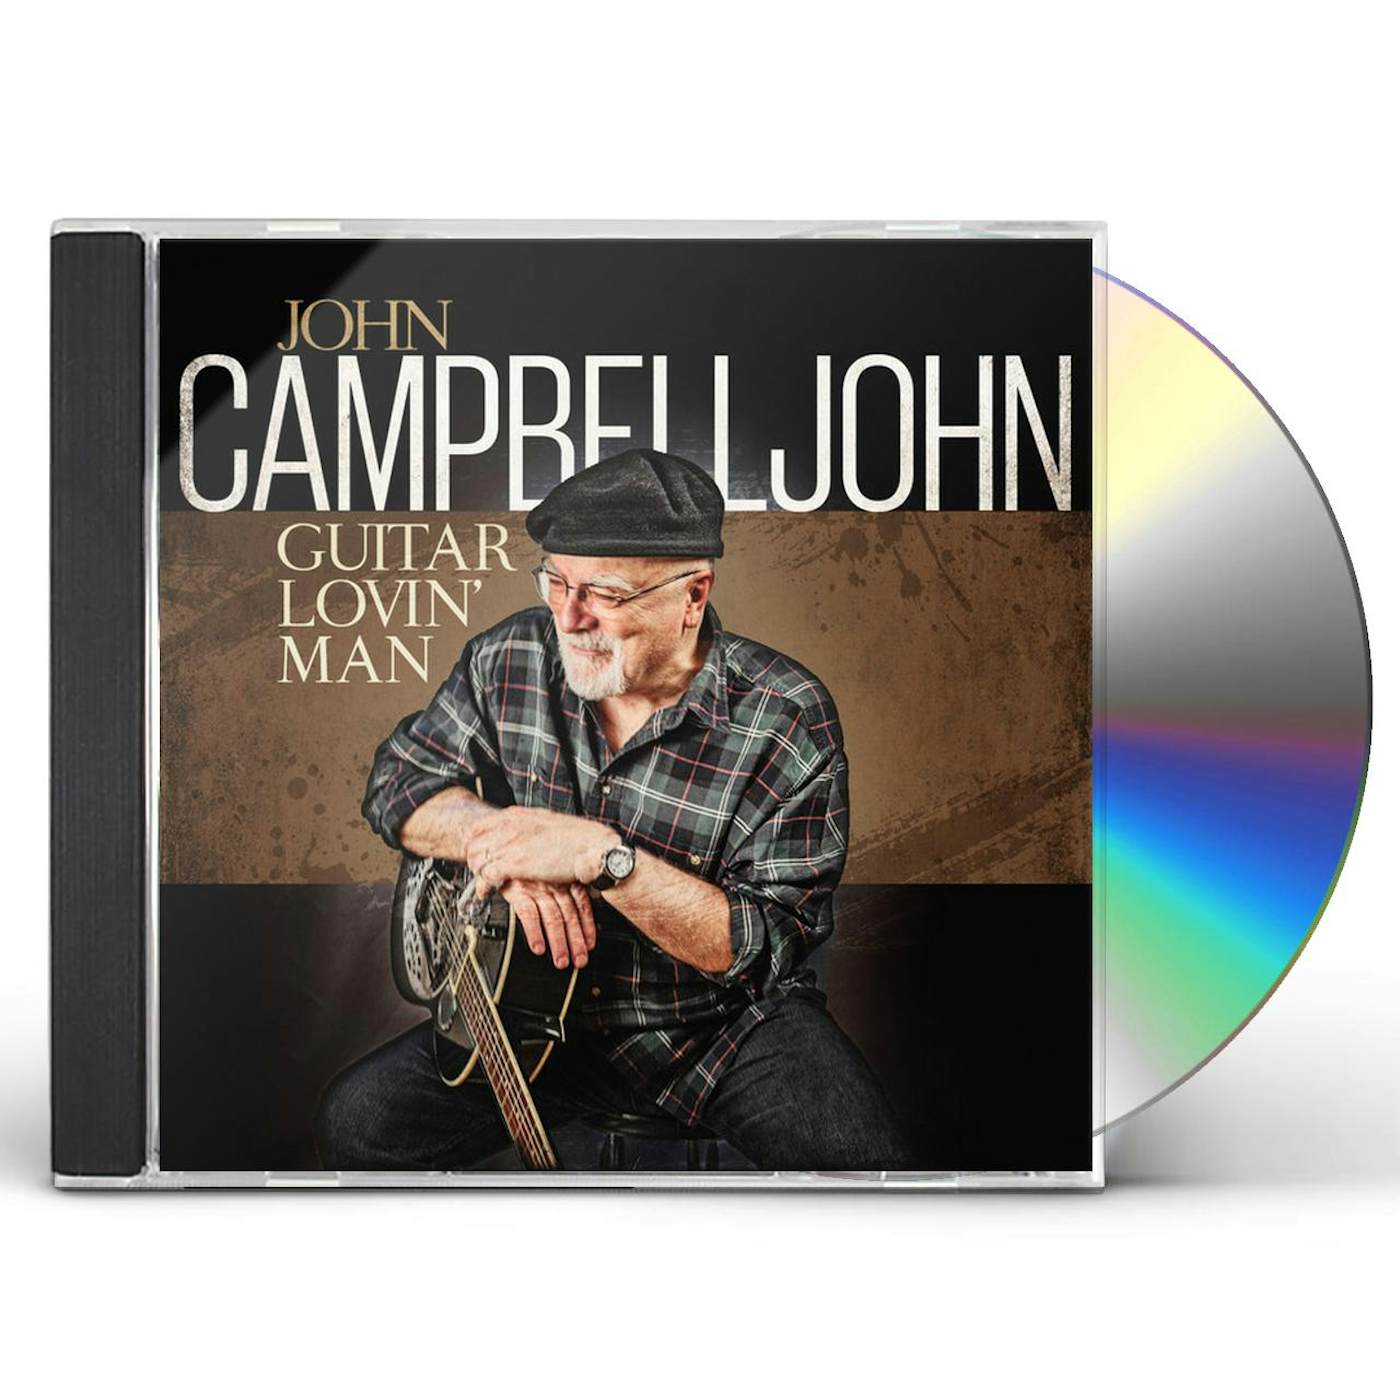 John Campbelljohn GUITAR LOVIN MAN CD